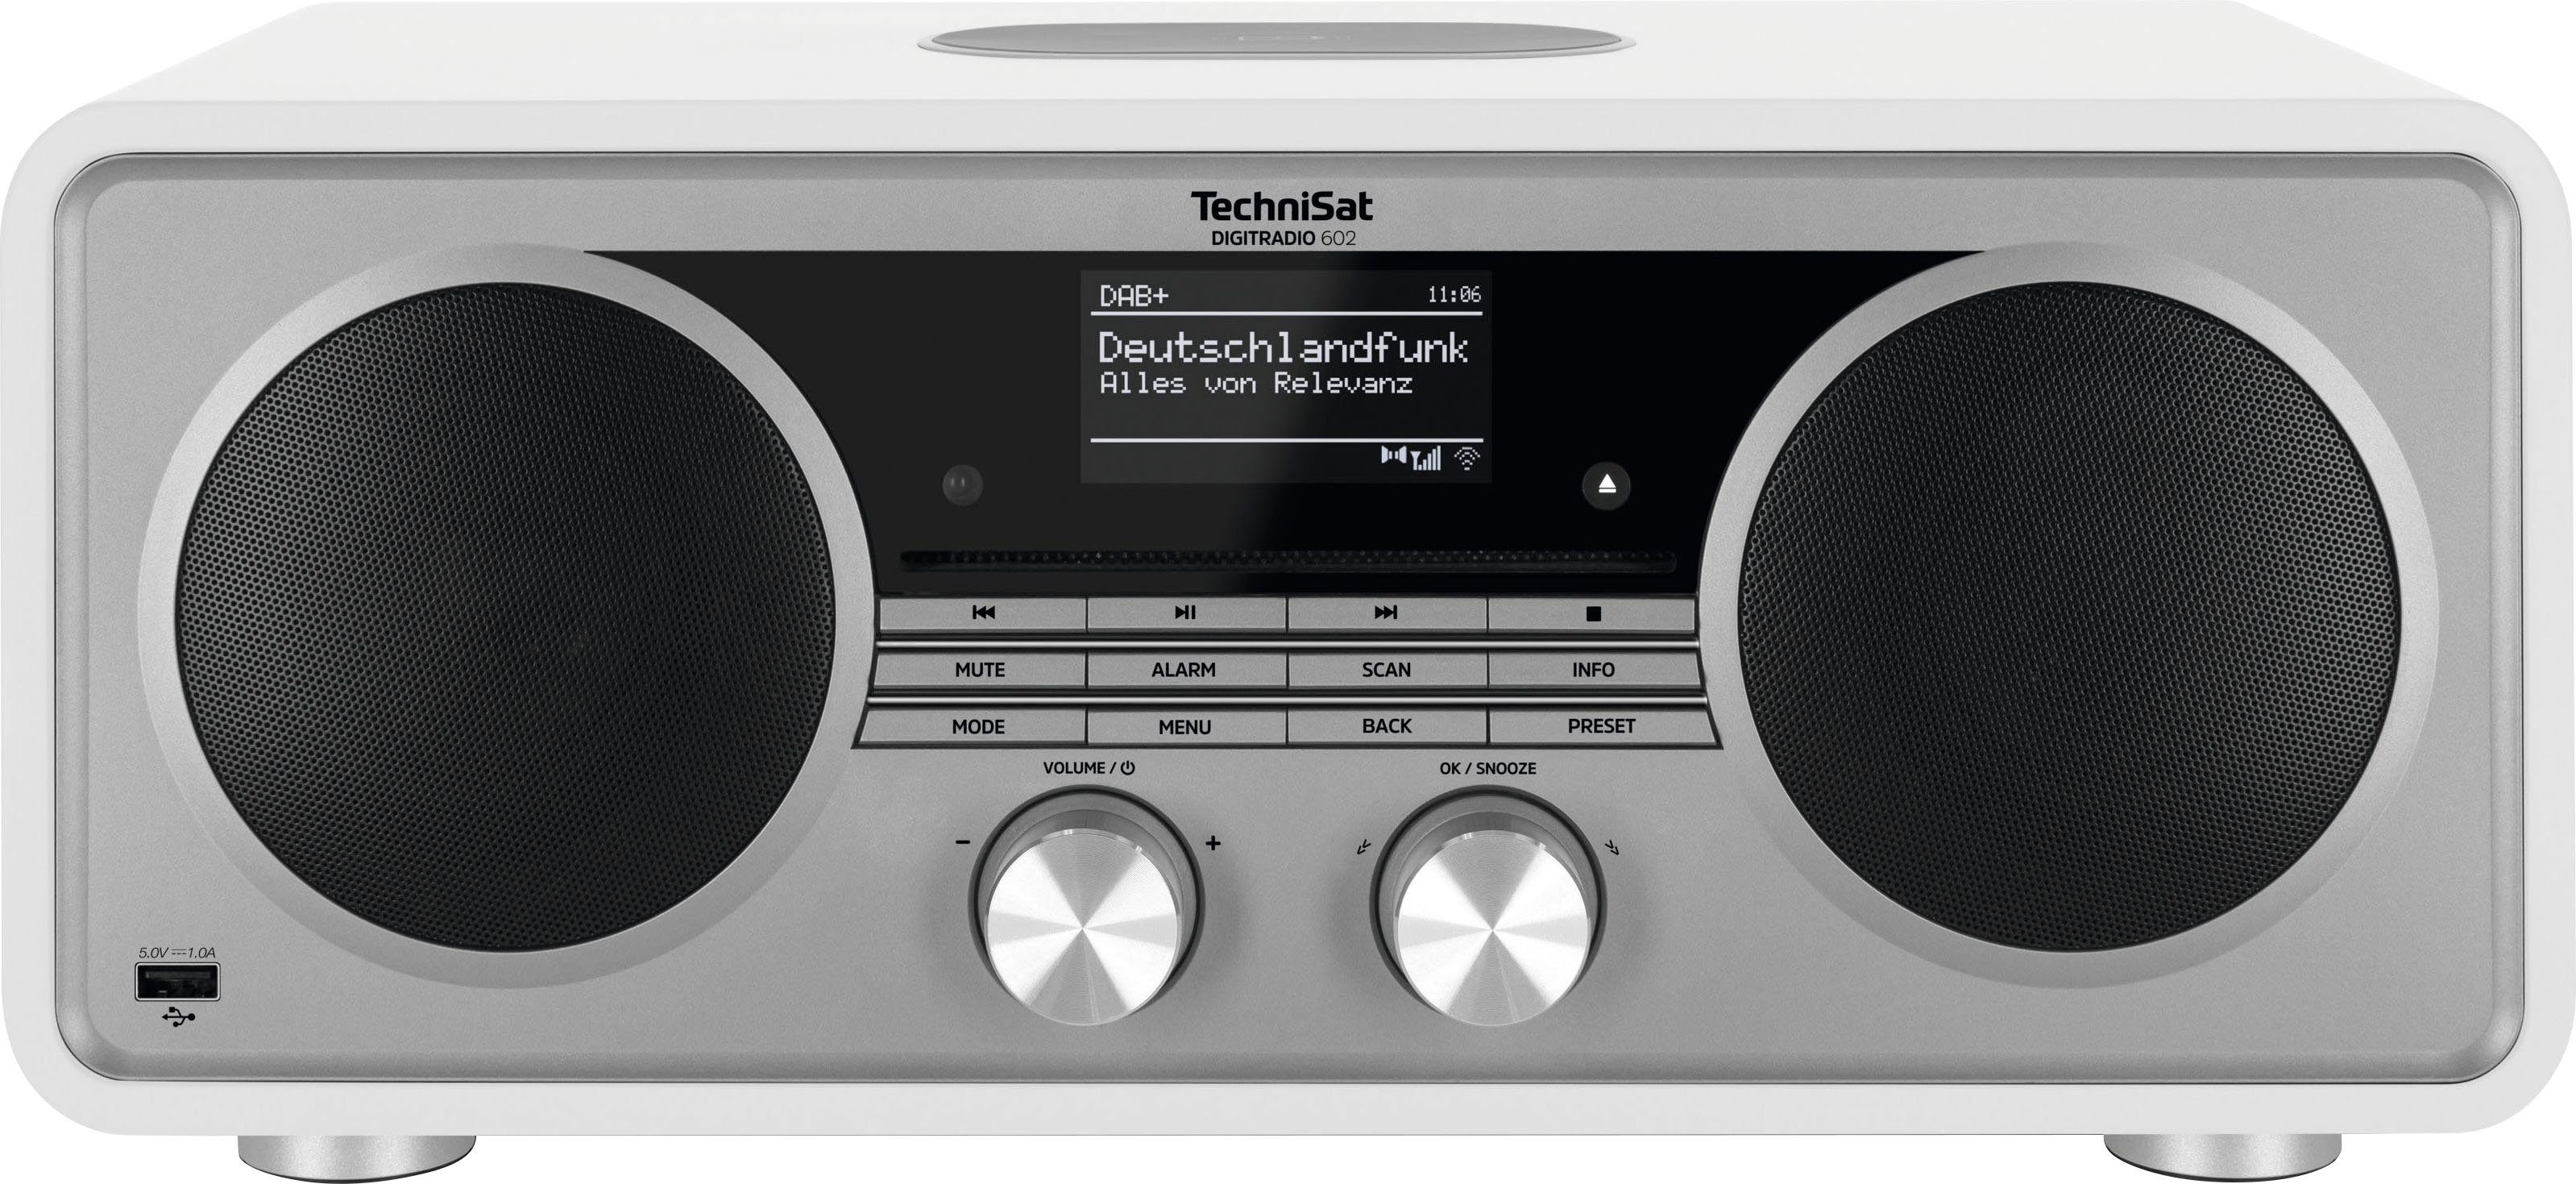 (DAB), (Digitalradio 602 DIGITRADIO CD-Player) W, Weiß/Silber 70 UKW Internet-Radio TechniSat Stereoanlage, RDS, mit